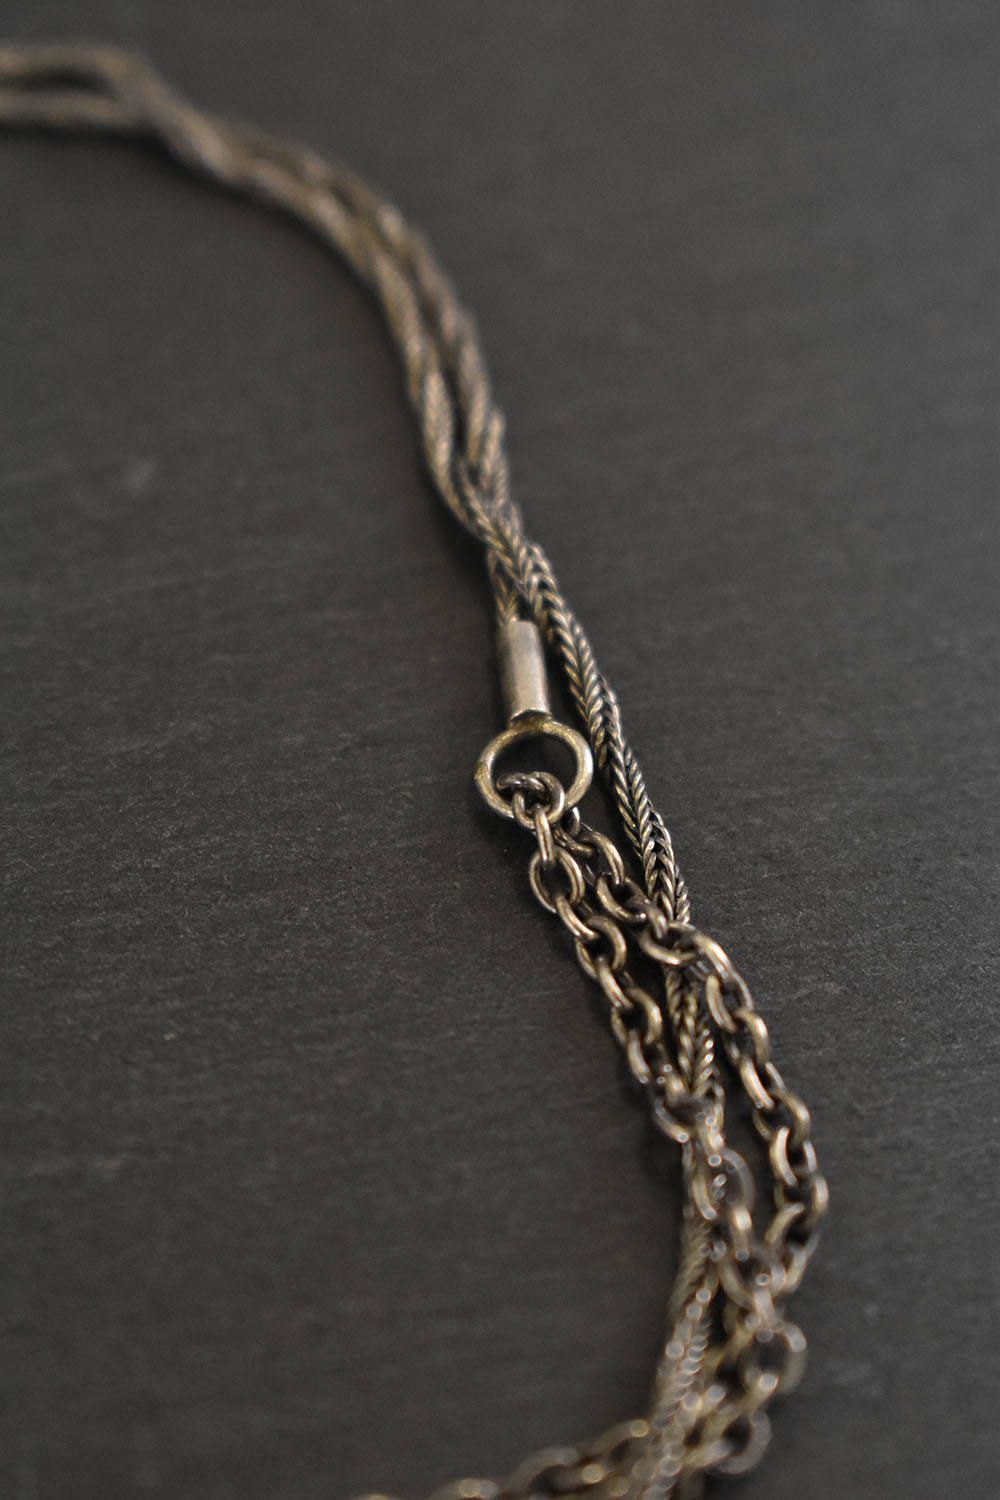 Chain Bracelet&Necklace